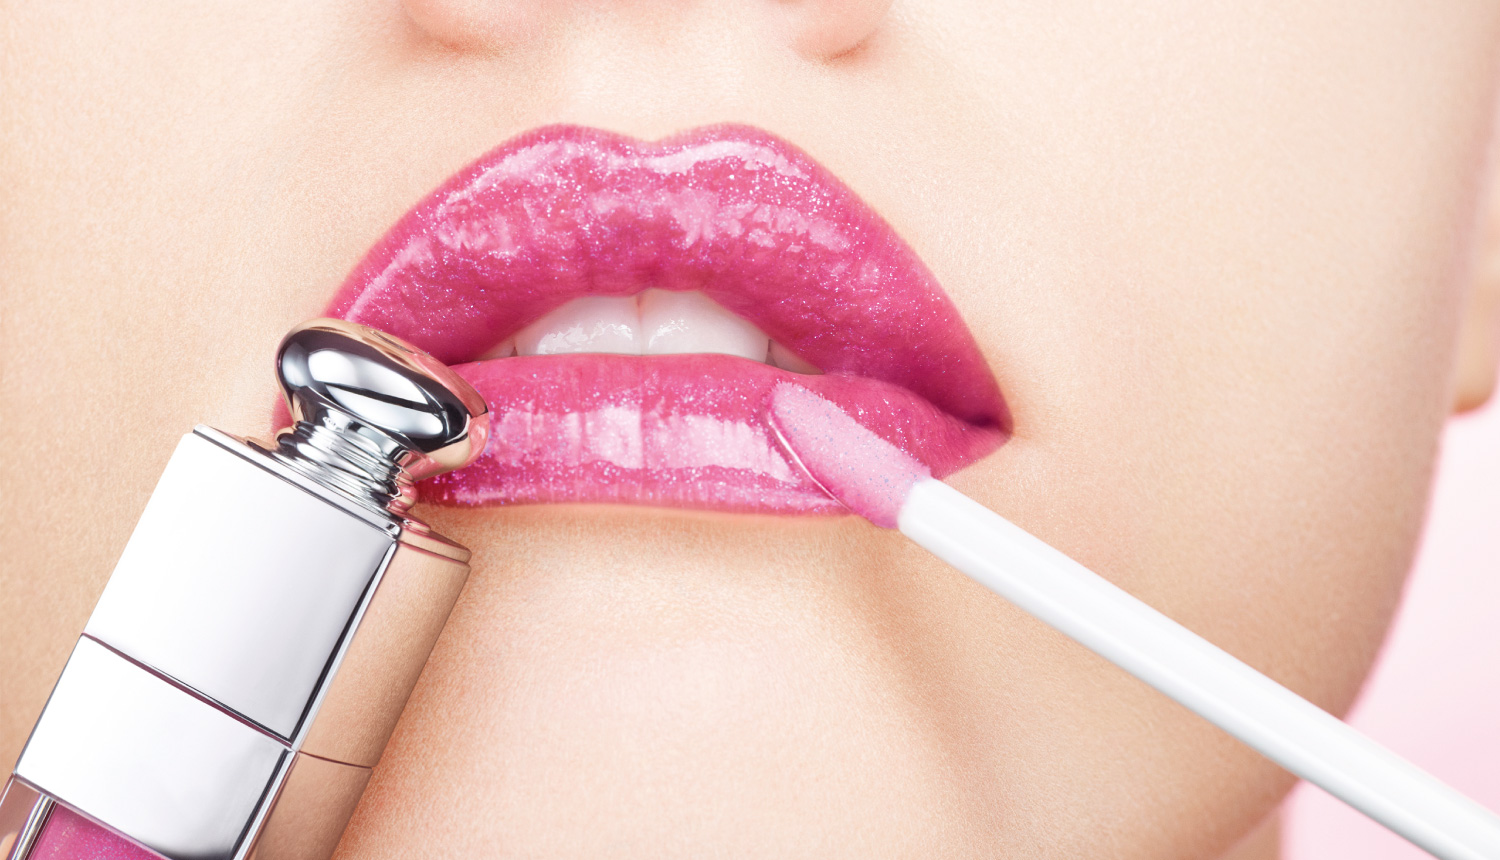 dior addict lip maximizer collagen